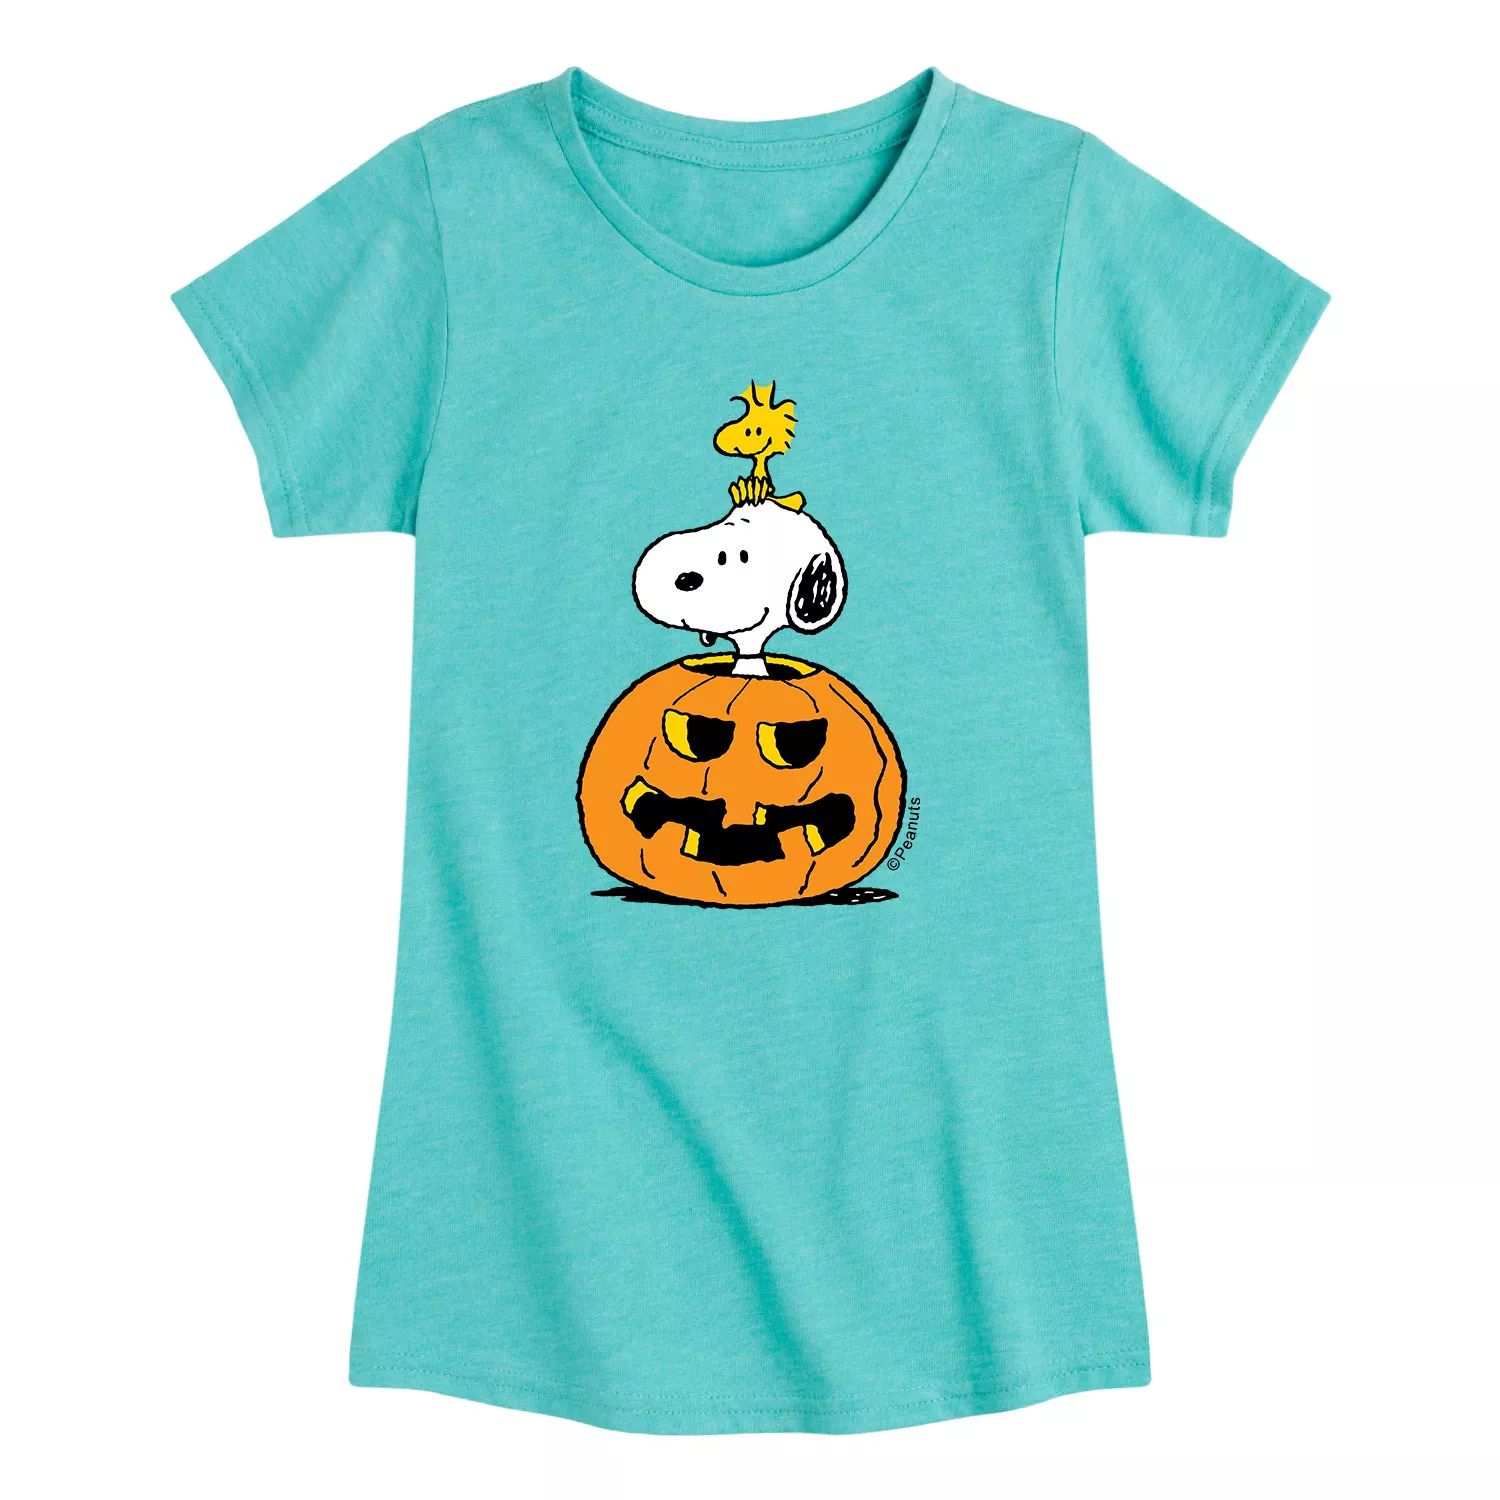 Футболка с рисунком тыквы «Арахис» для девочек 7–16 лет Snoopy Licensed Character футболка с рисунком конфет и тыквы для девочек 7–16 лет licensed character